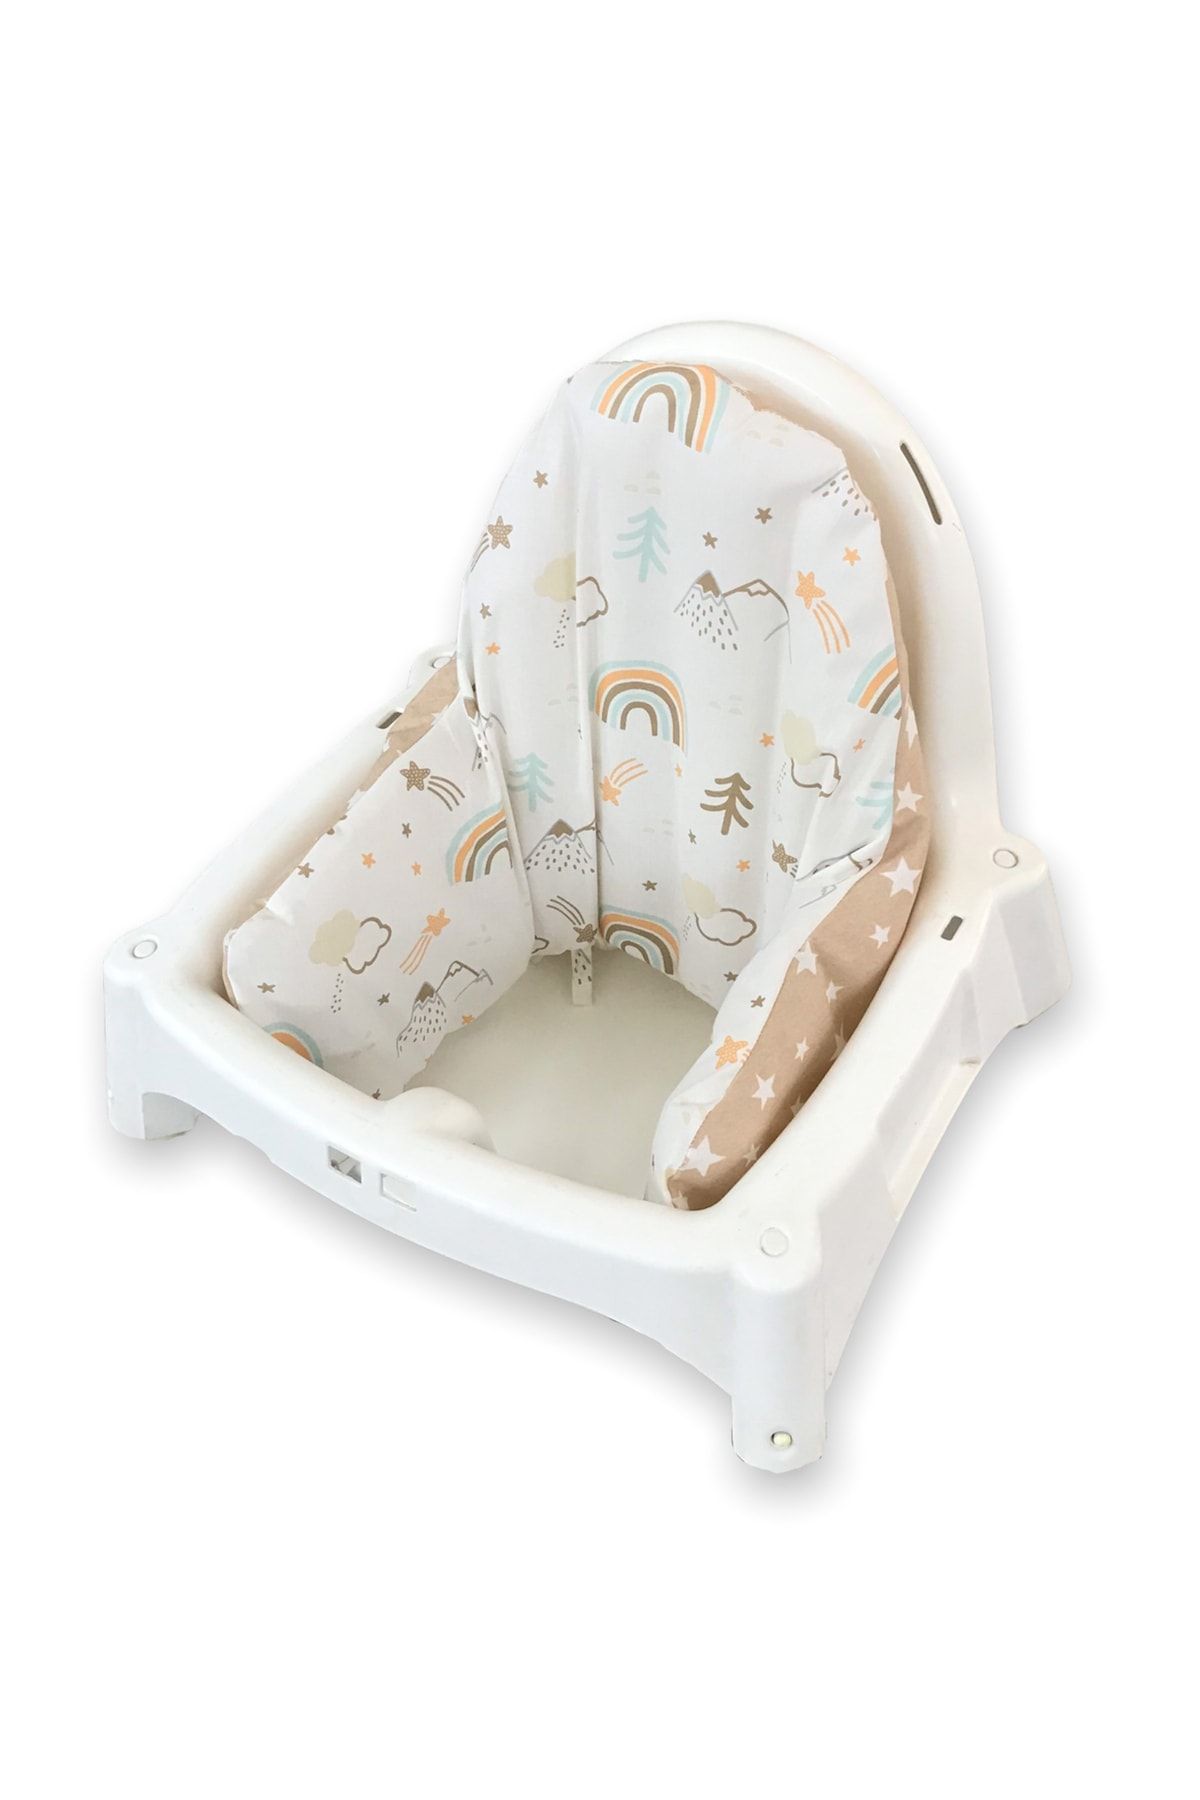 Bebek Özel Ikea Antılop Mama Sandalyesi Için Destek Minderi (kılıf + Iç Minder) Gökkuşağı